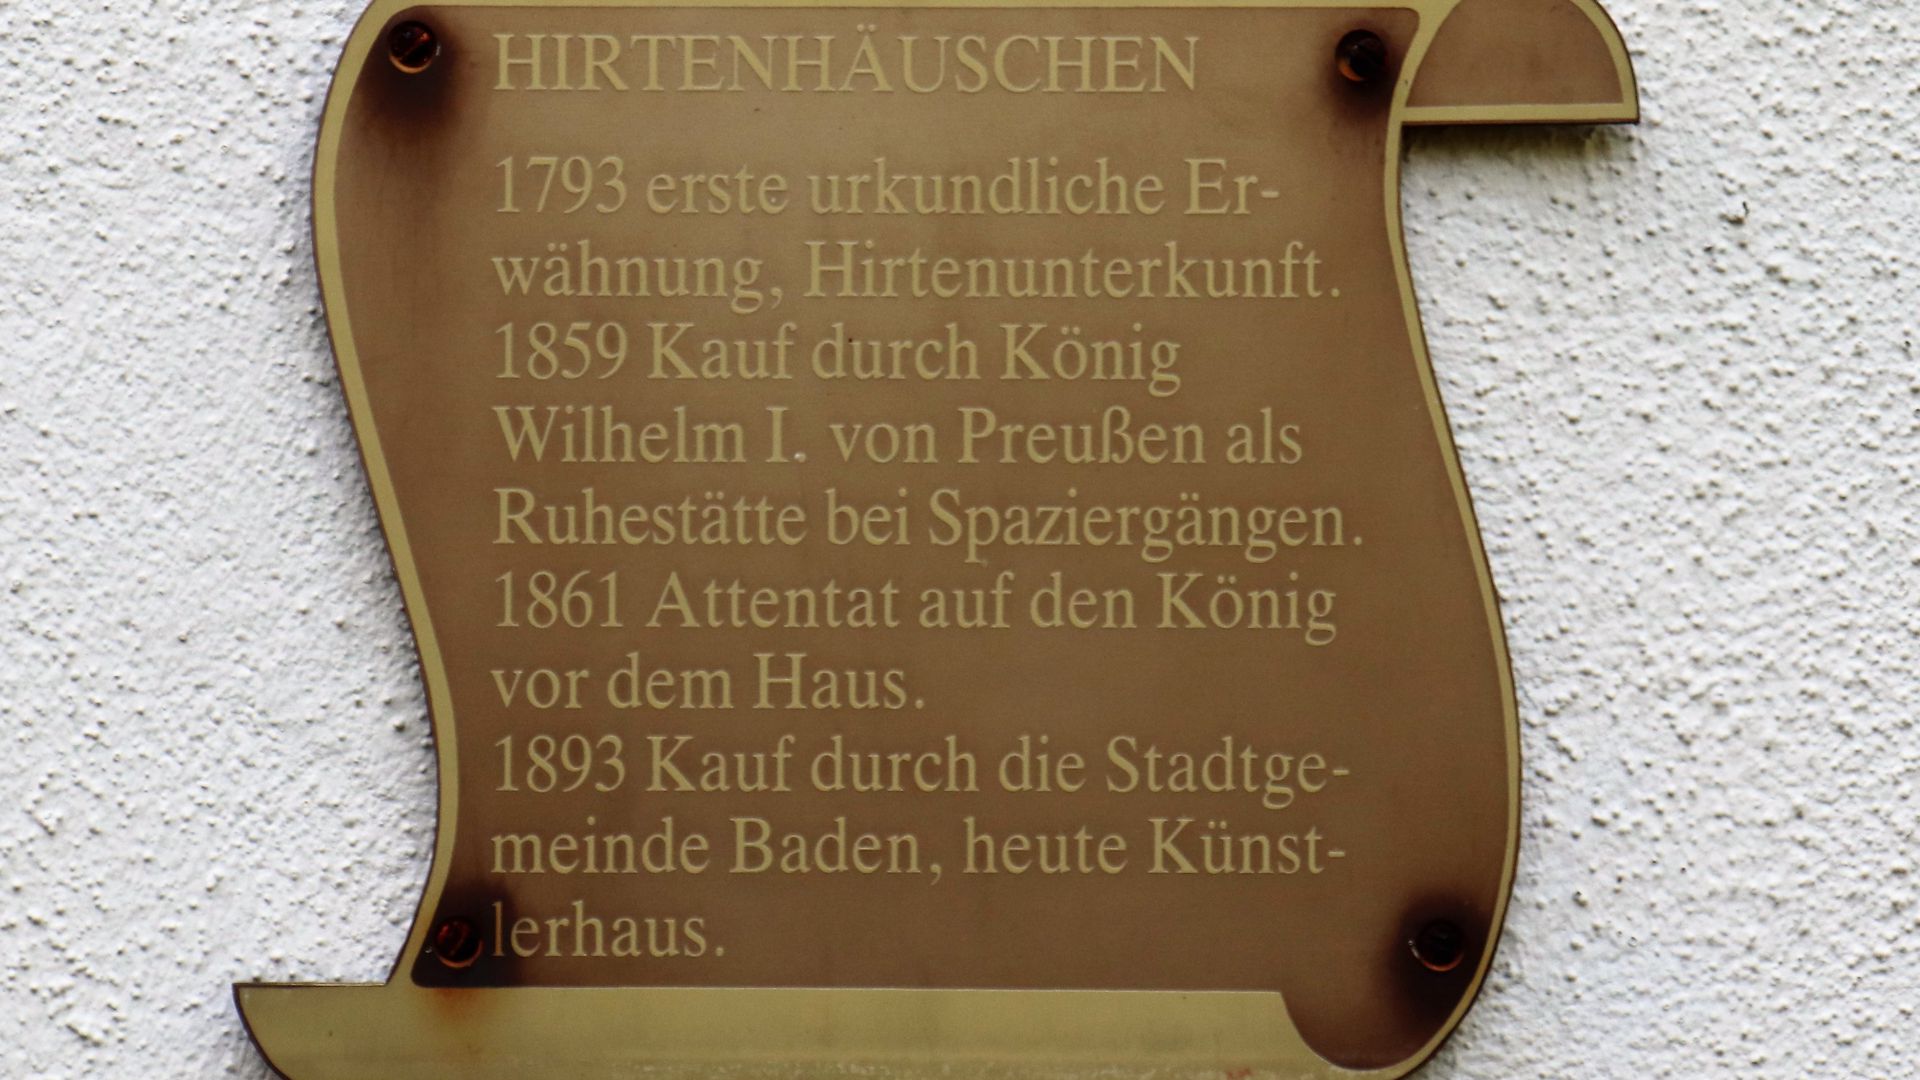 Inschrift am Hirtenhäuschen in Baden-Baden.